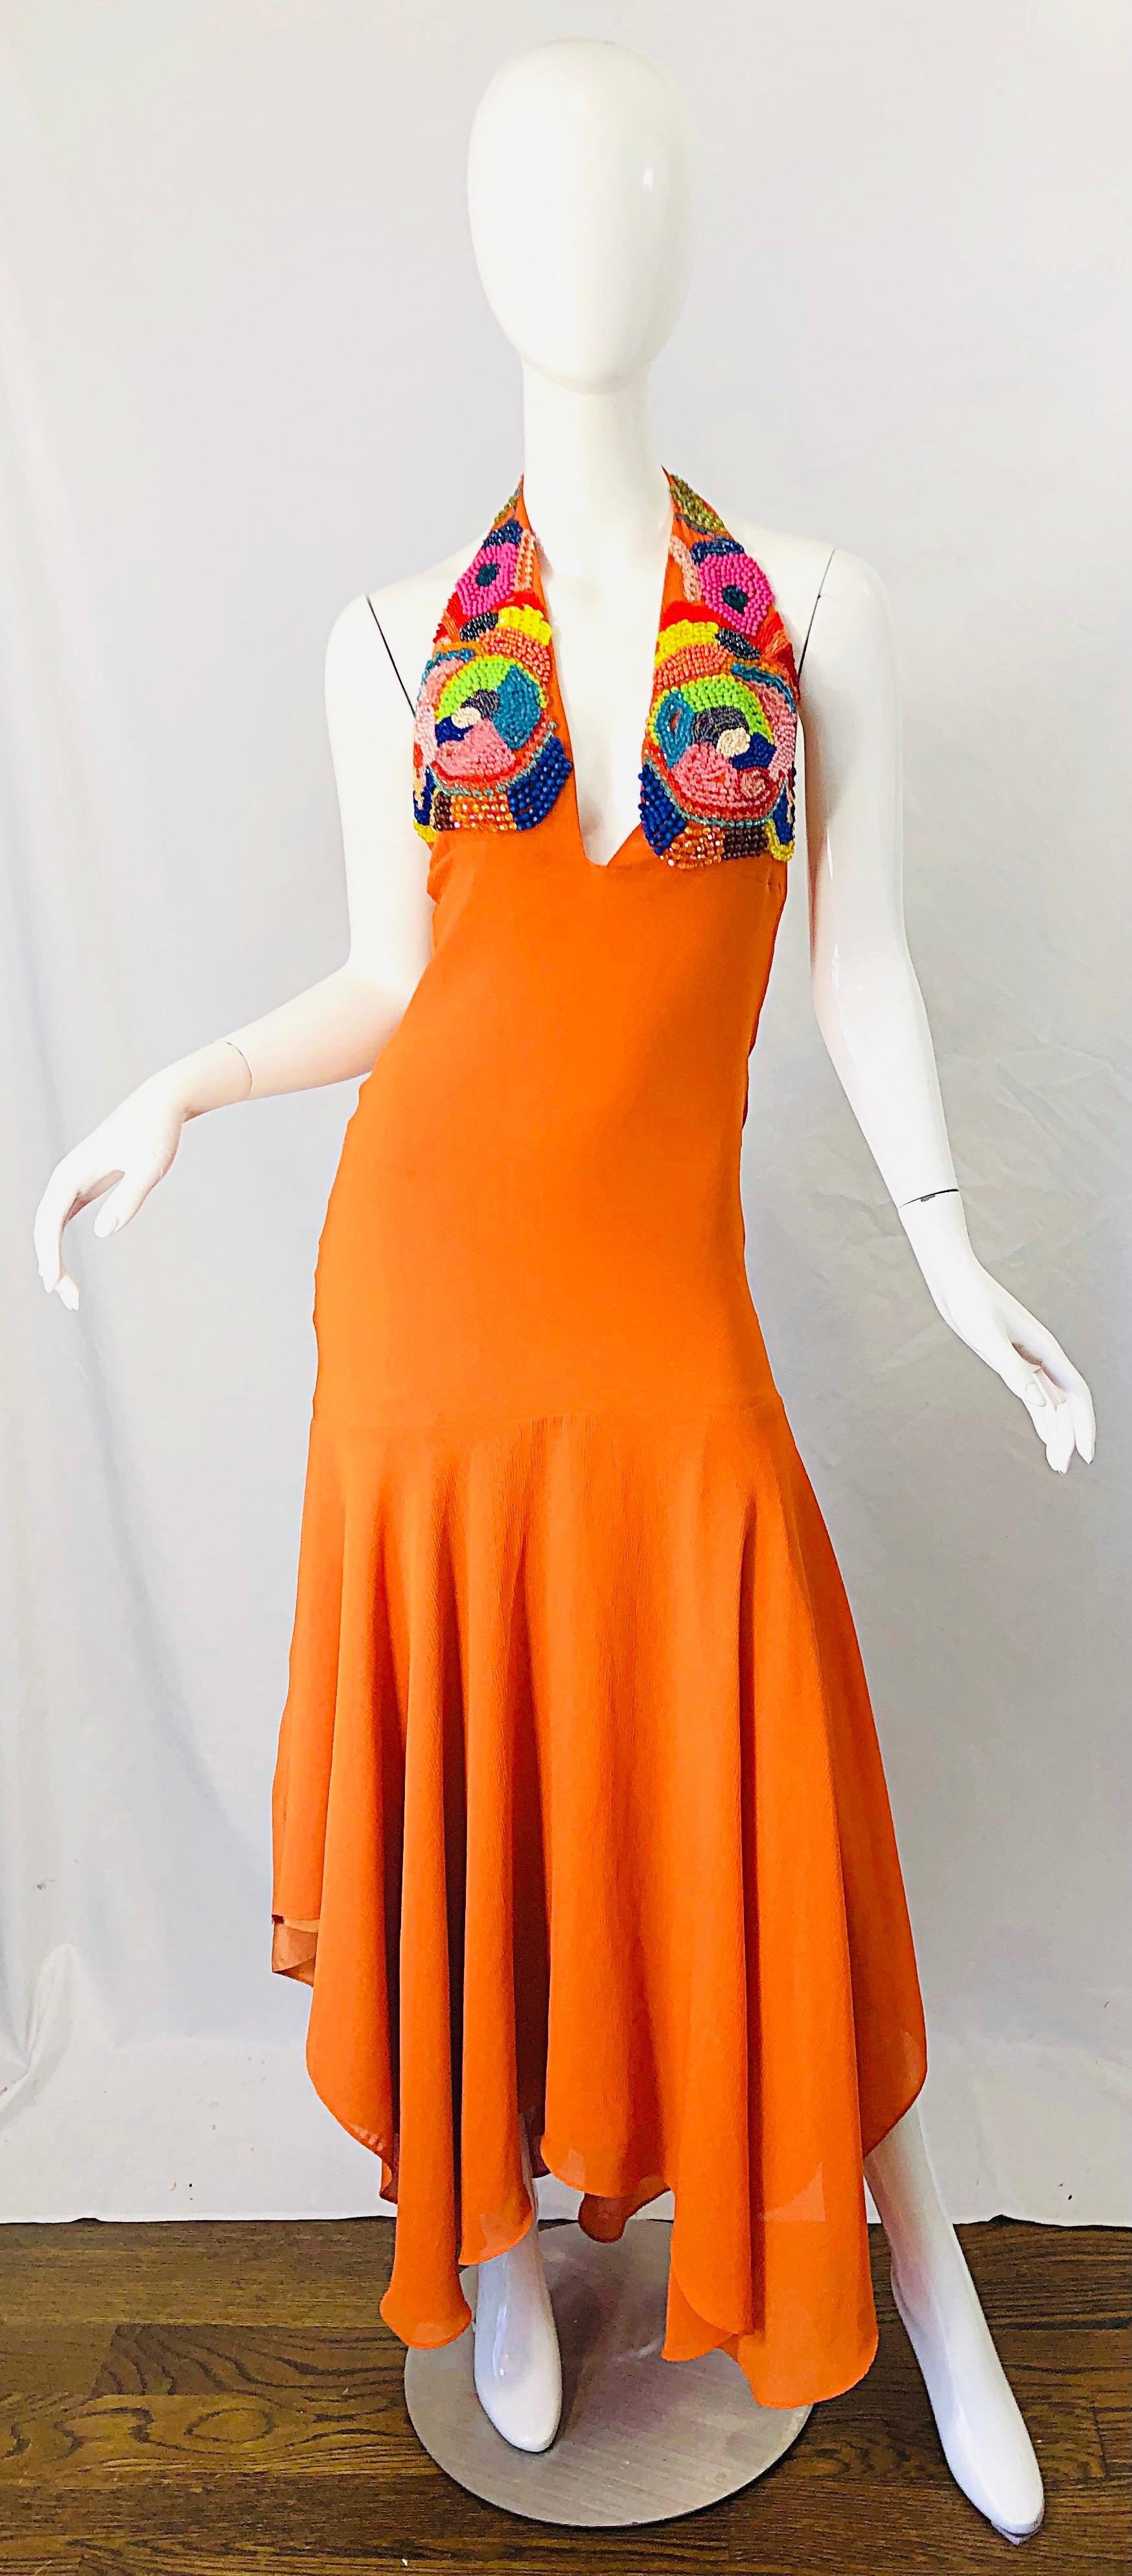 Erstaunlich 90er Jahre tut 70er Jahre leuchtend orange Perlen Taschentuch Saum Krepp Chiffon Halfter Flamenco Stil Maxi-Kleid Kleid ! Mit tiefem Ausschnitt und Hunderten von handgenähten Perlen in Pink, Gelb, Grün und Türkis, die die Brust zieren.